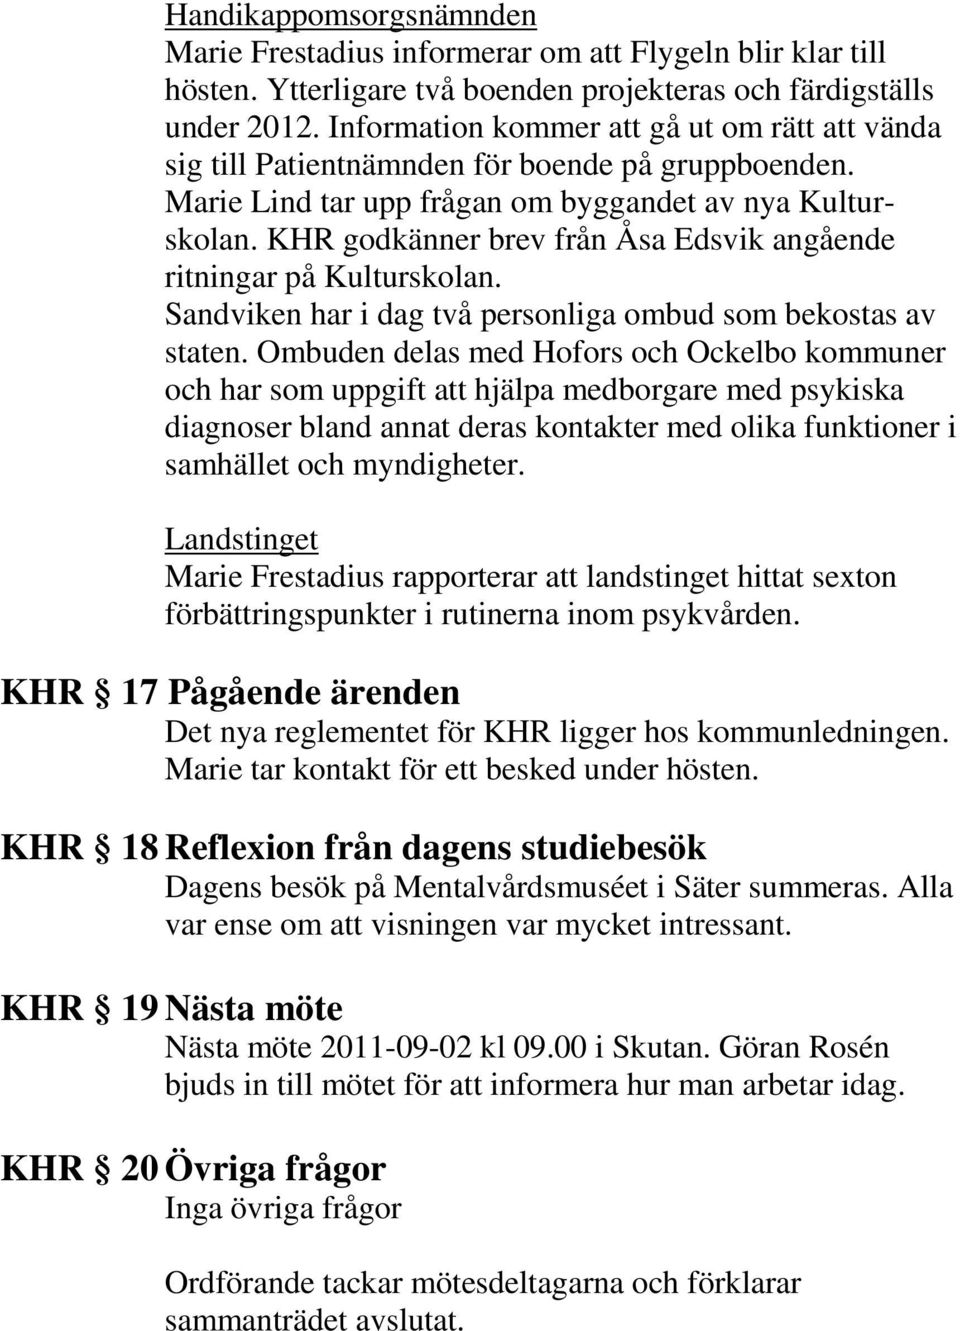 KHR godkänner brev från Åsa Edsvik angående ritningar på Kulturskolan. Sandviken har i dag två personliga ombud som bekostas av staten.